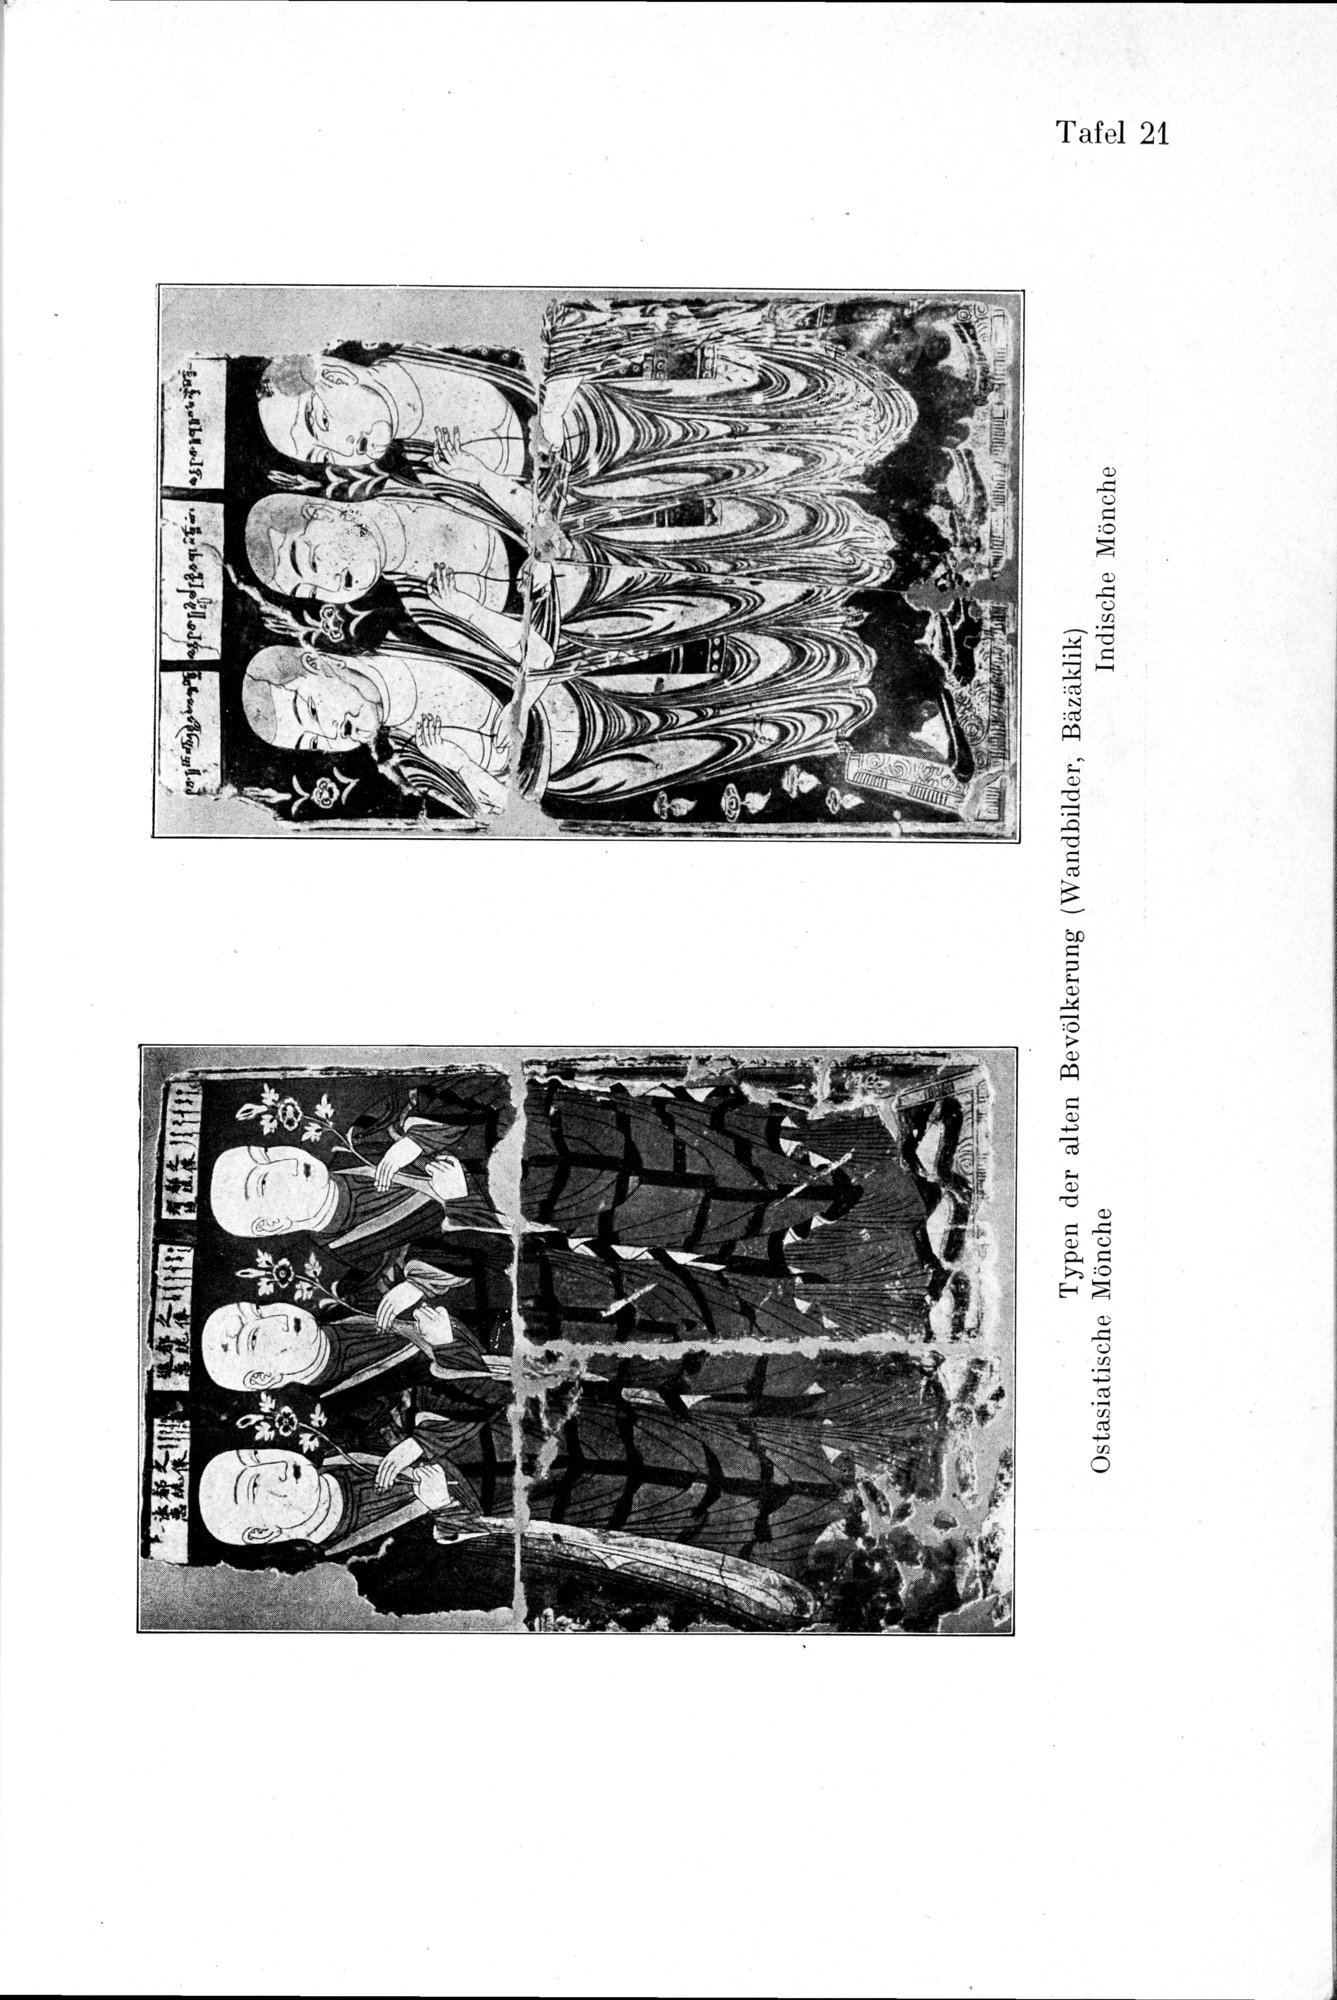 Auf Hellas Spuren in Ostturkistan : vol.1 / Page 109 (Grayscale High Resolution Image)